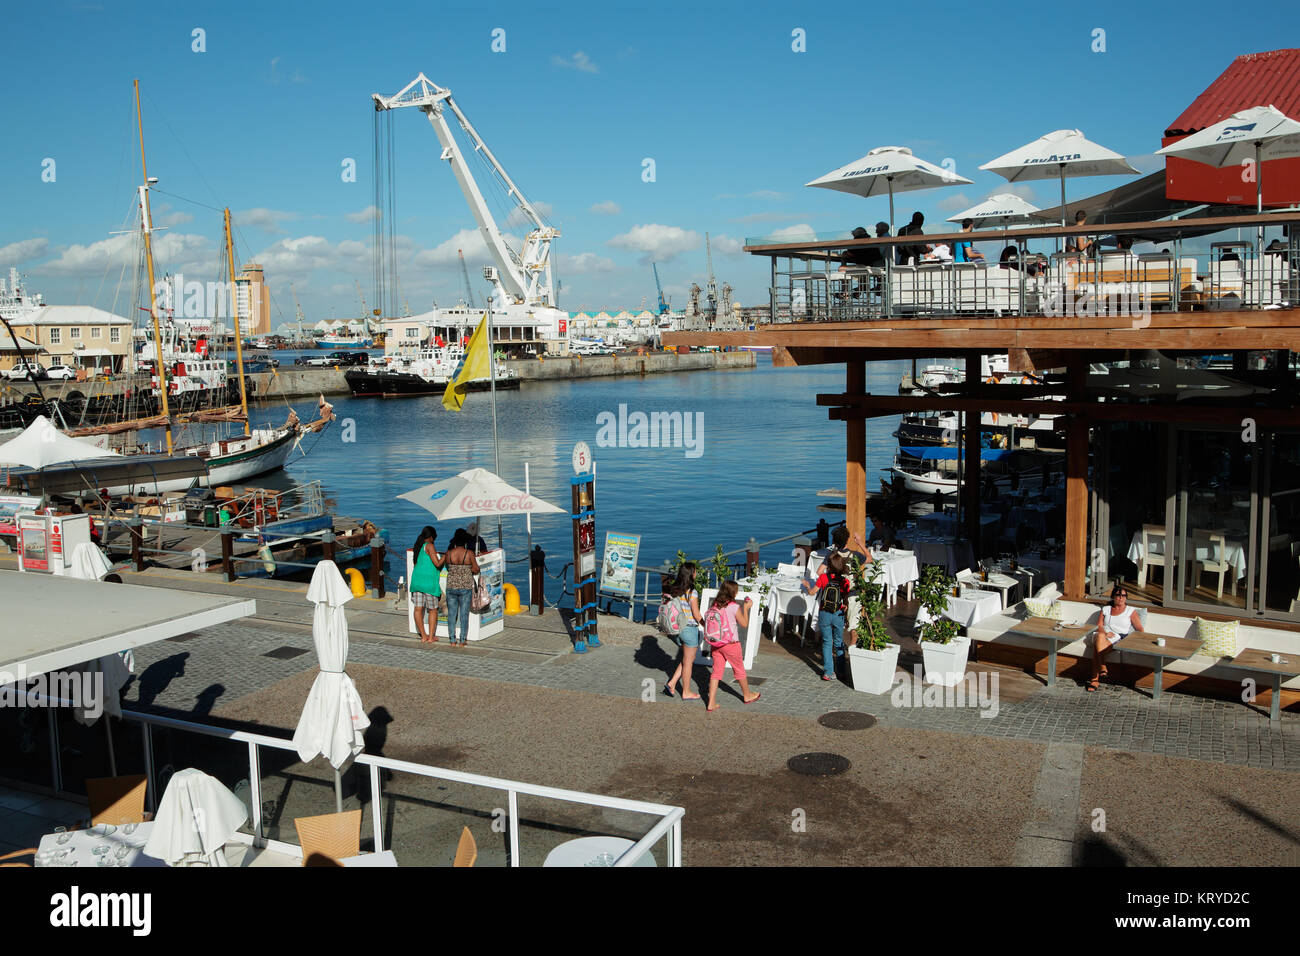 Kapstadt, Südafrika - 20. FEBRUAR 2012: Victoria und Alfred Waterfront, Hafen mit Geschäften, Restaurants und Boote bei Touristen beliebt. Stockfoto